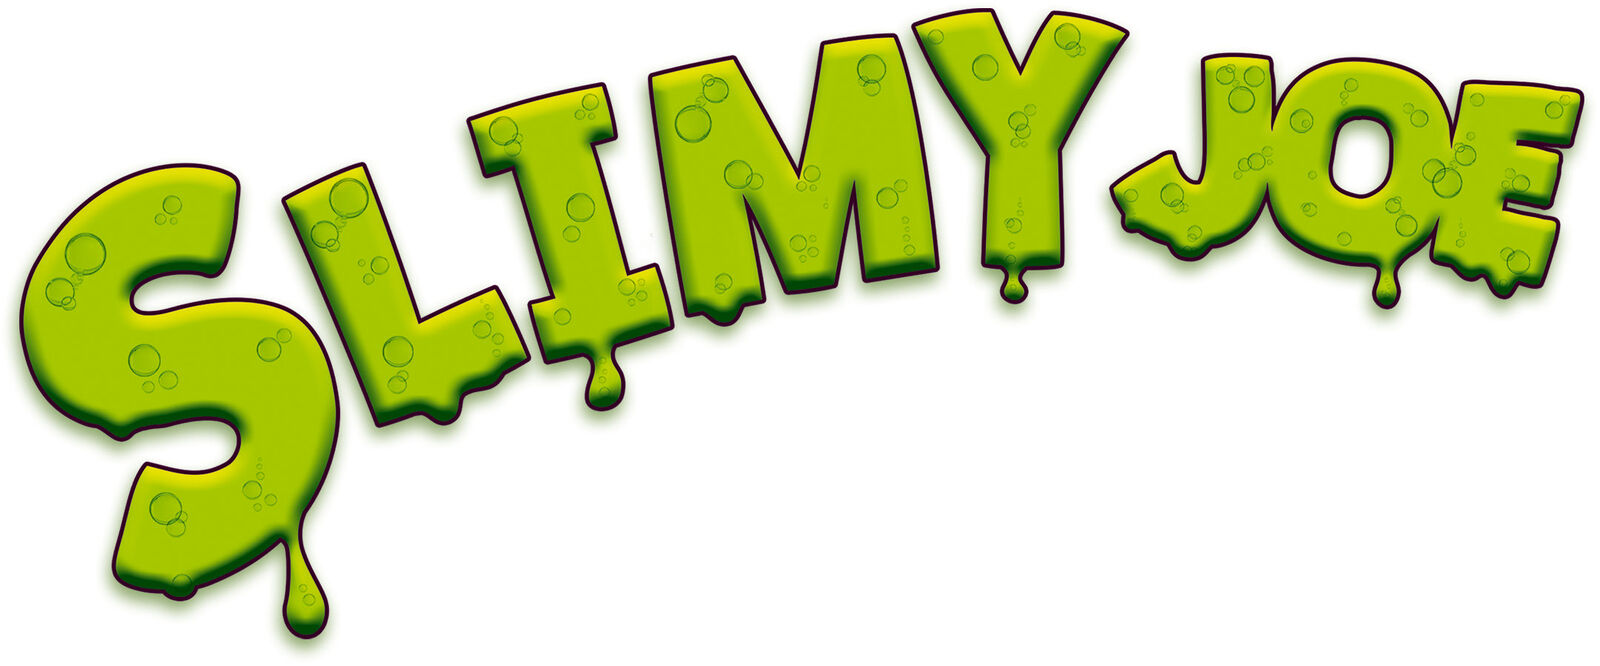 20594 Ravensburger Slimy Joe Slime Game Children Kids Family Age 4 Years+